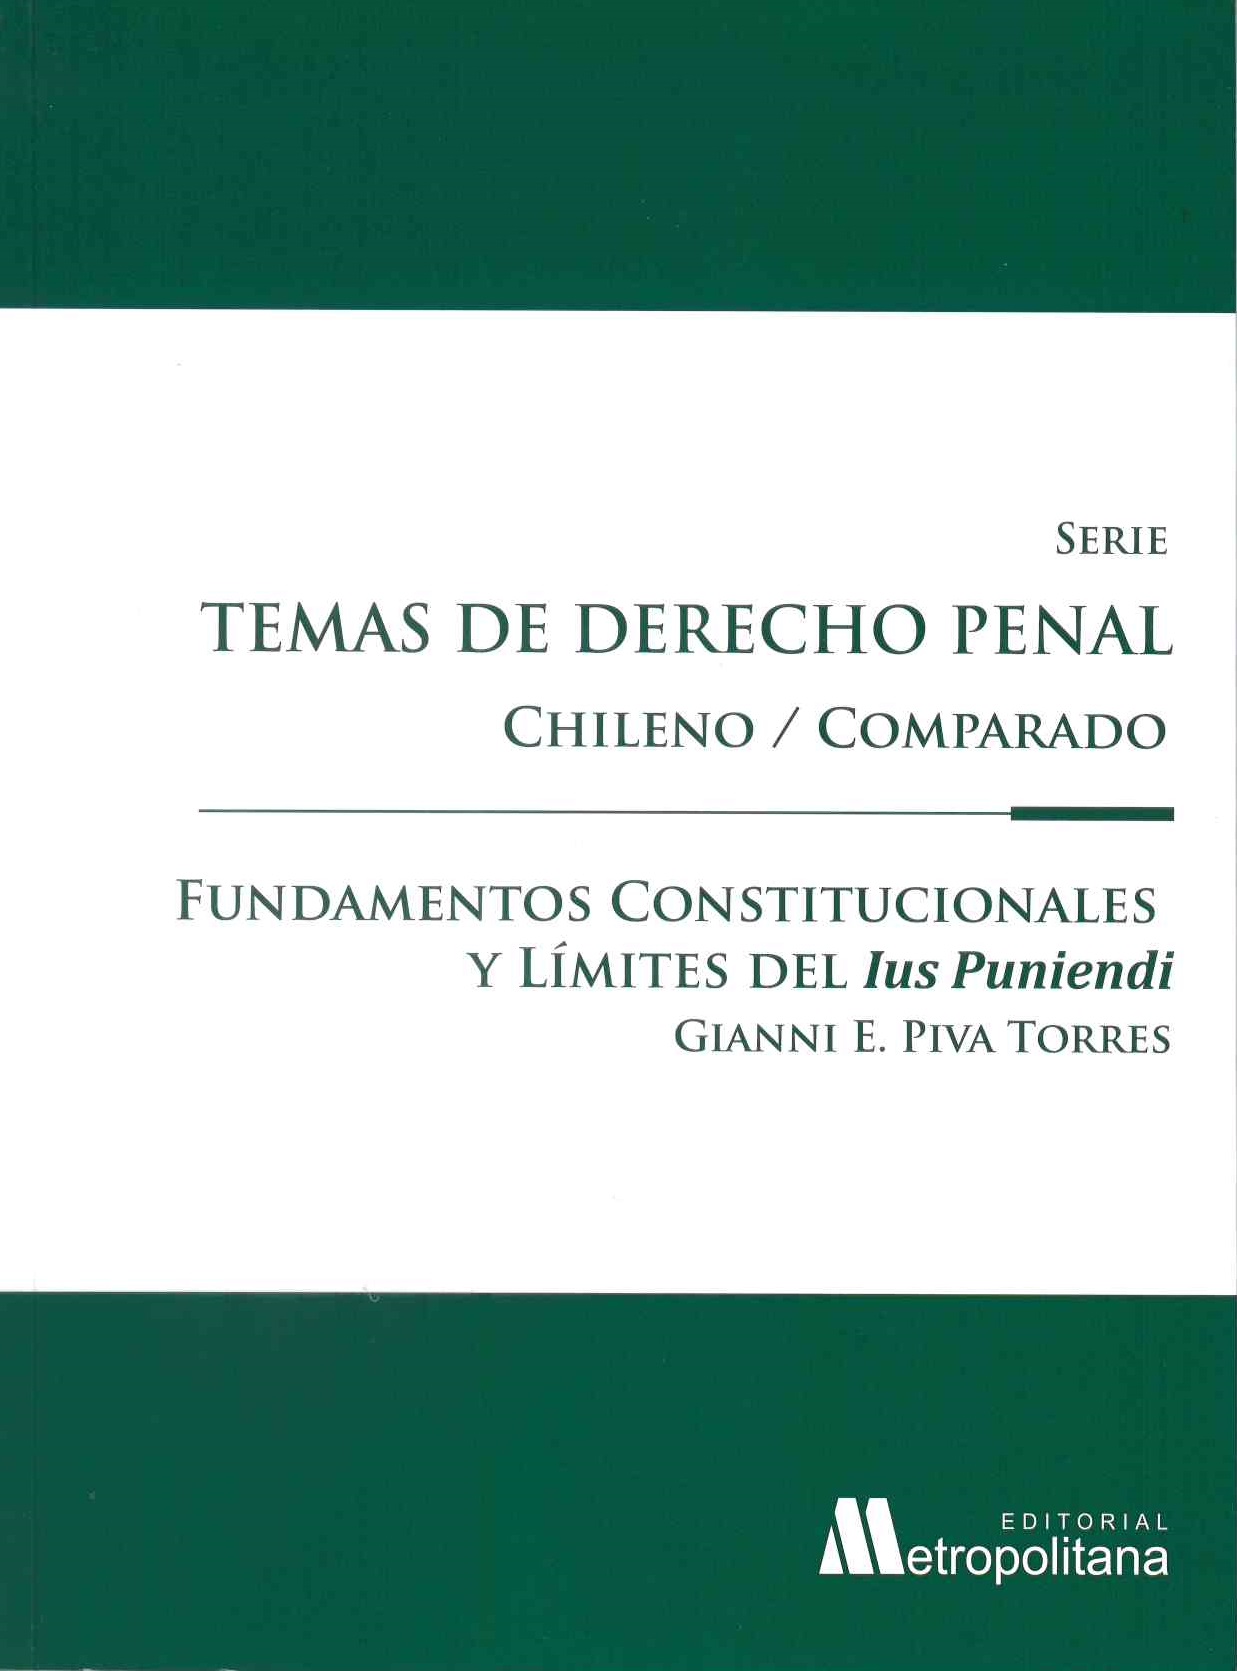 Fundamentos constitucionales y límites del ius puniendi 